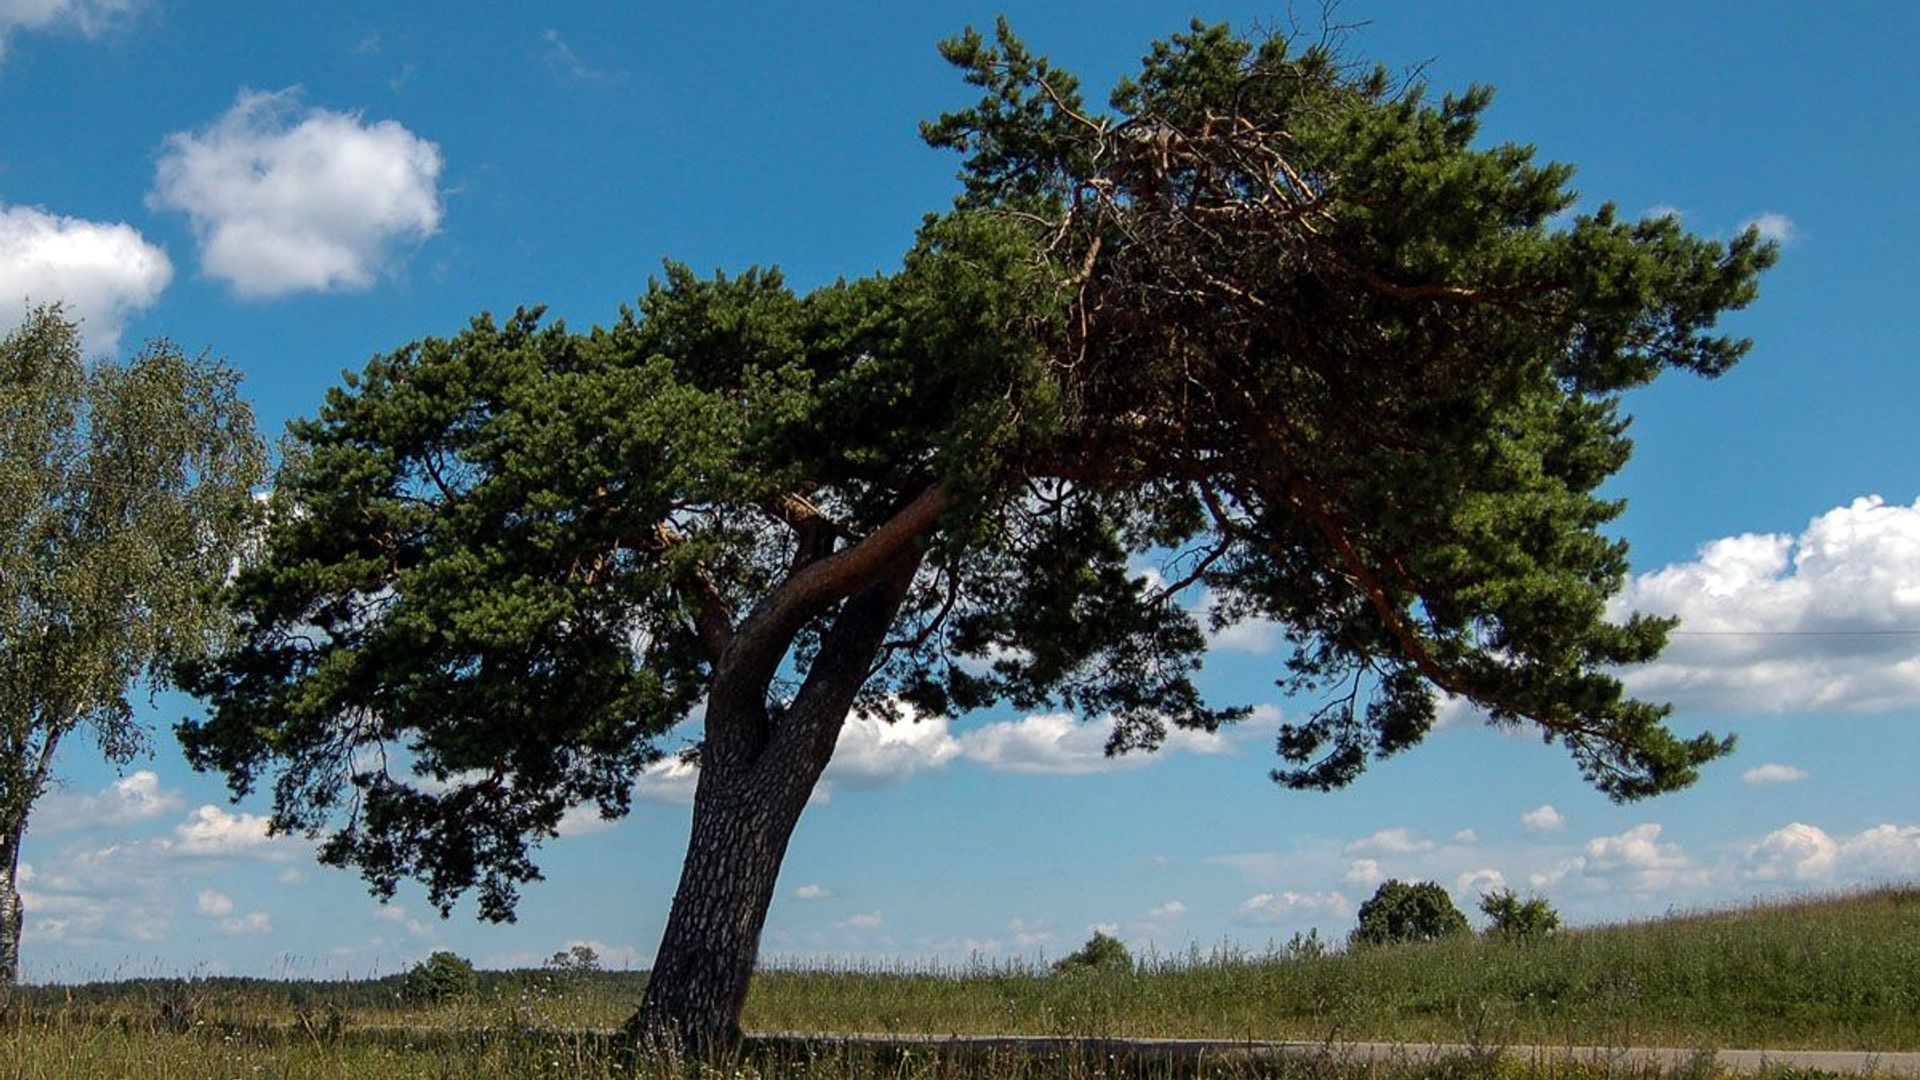 The Žvirgždėnai pine-tree